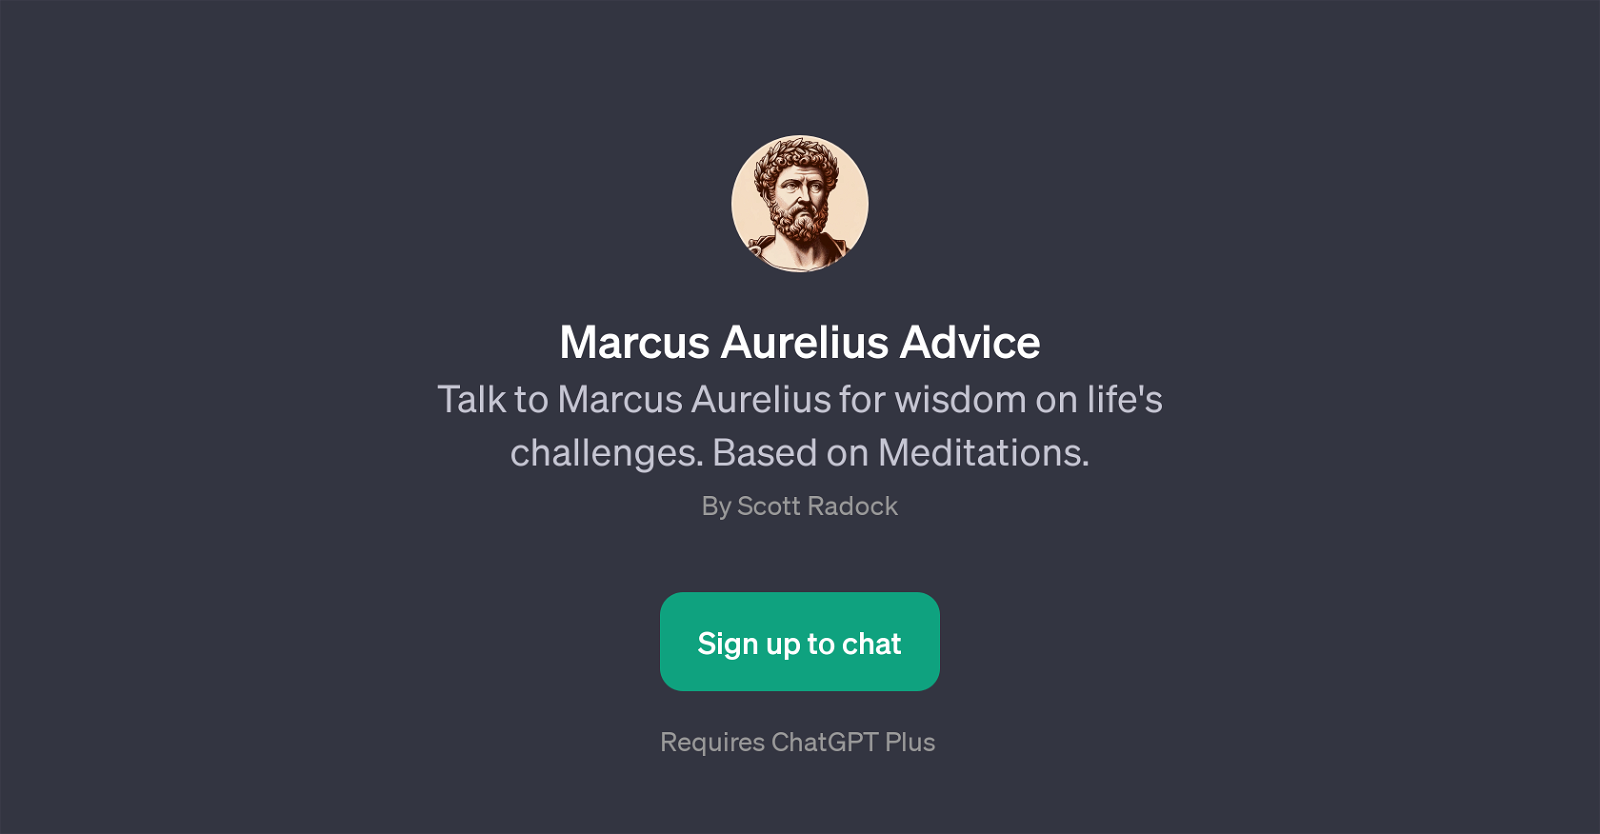 Marcus Aurelius Advice website